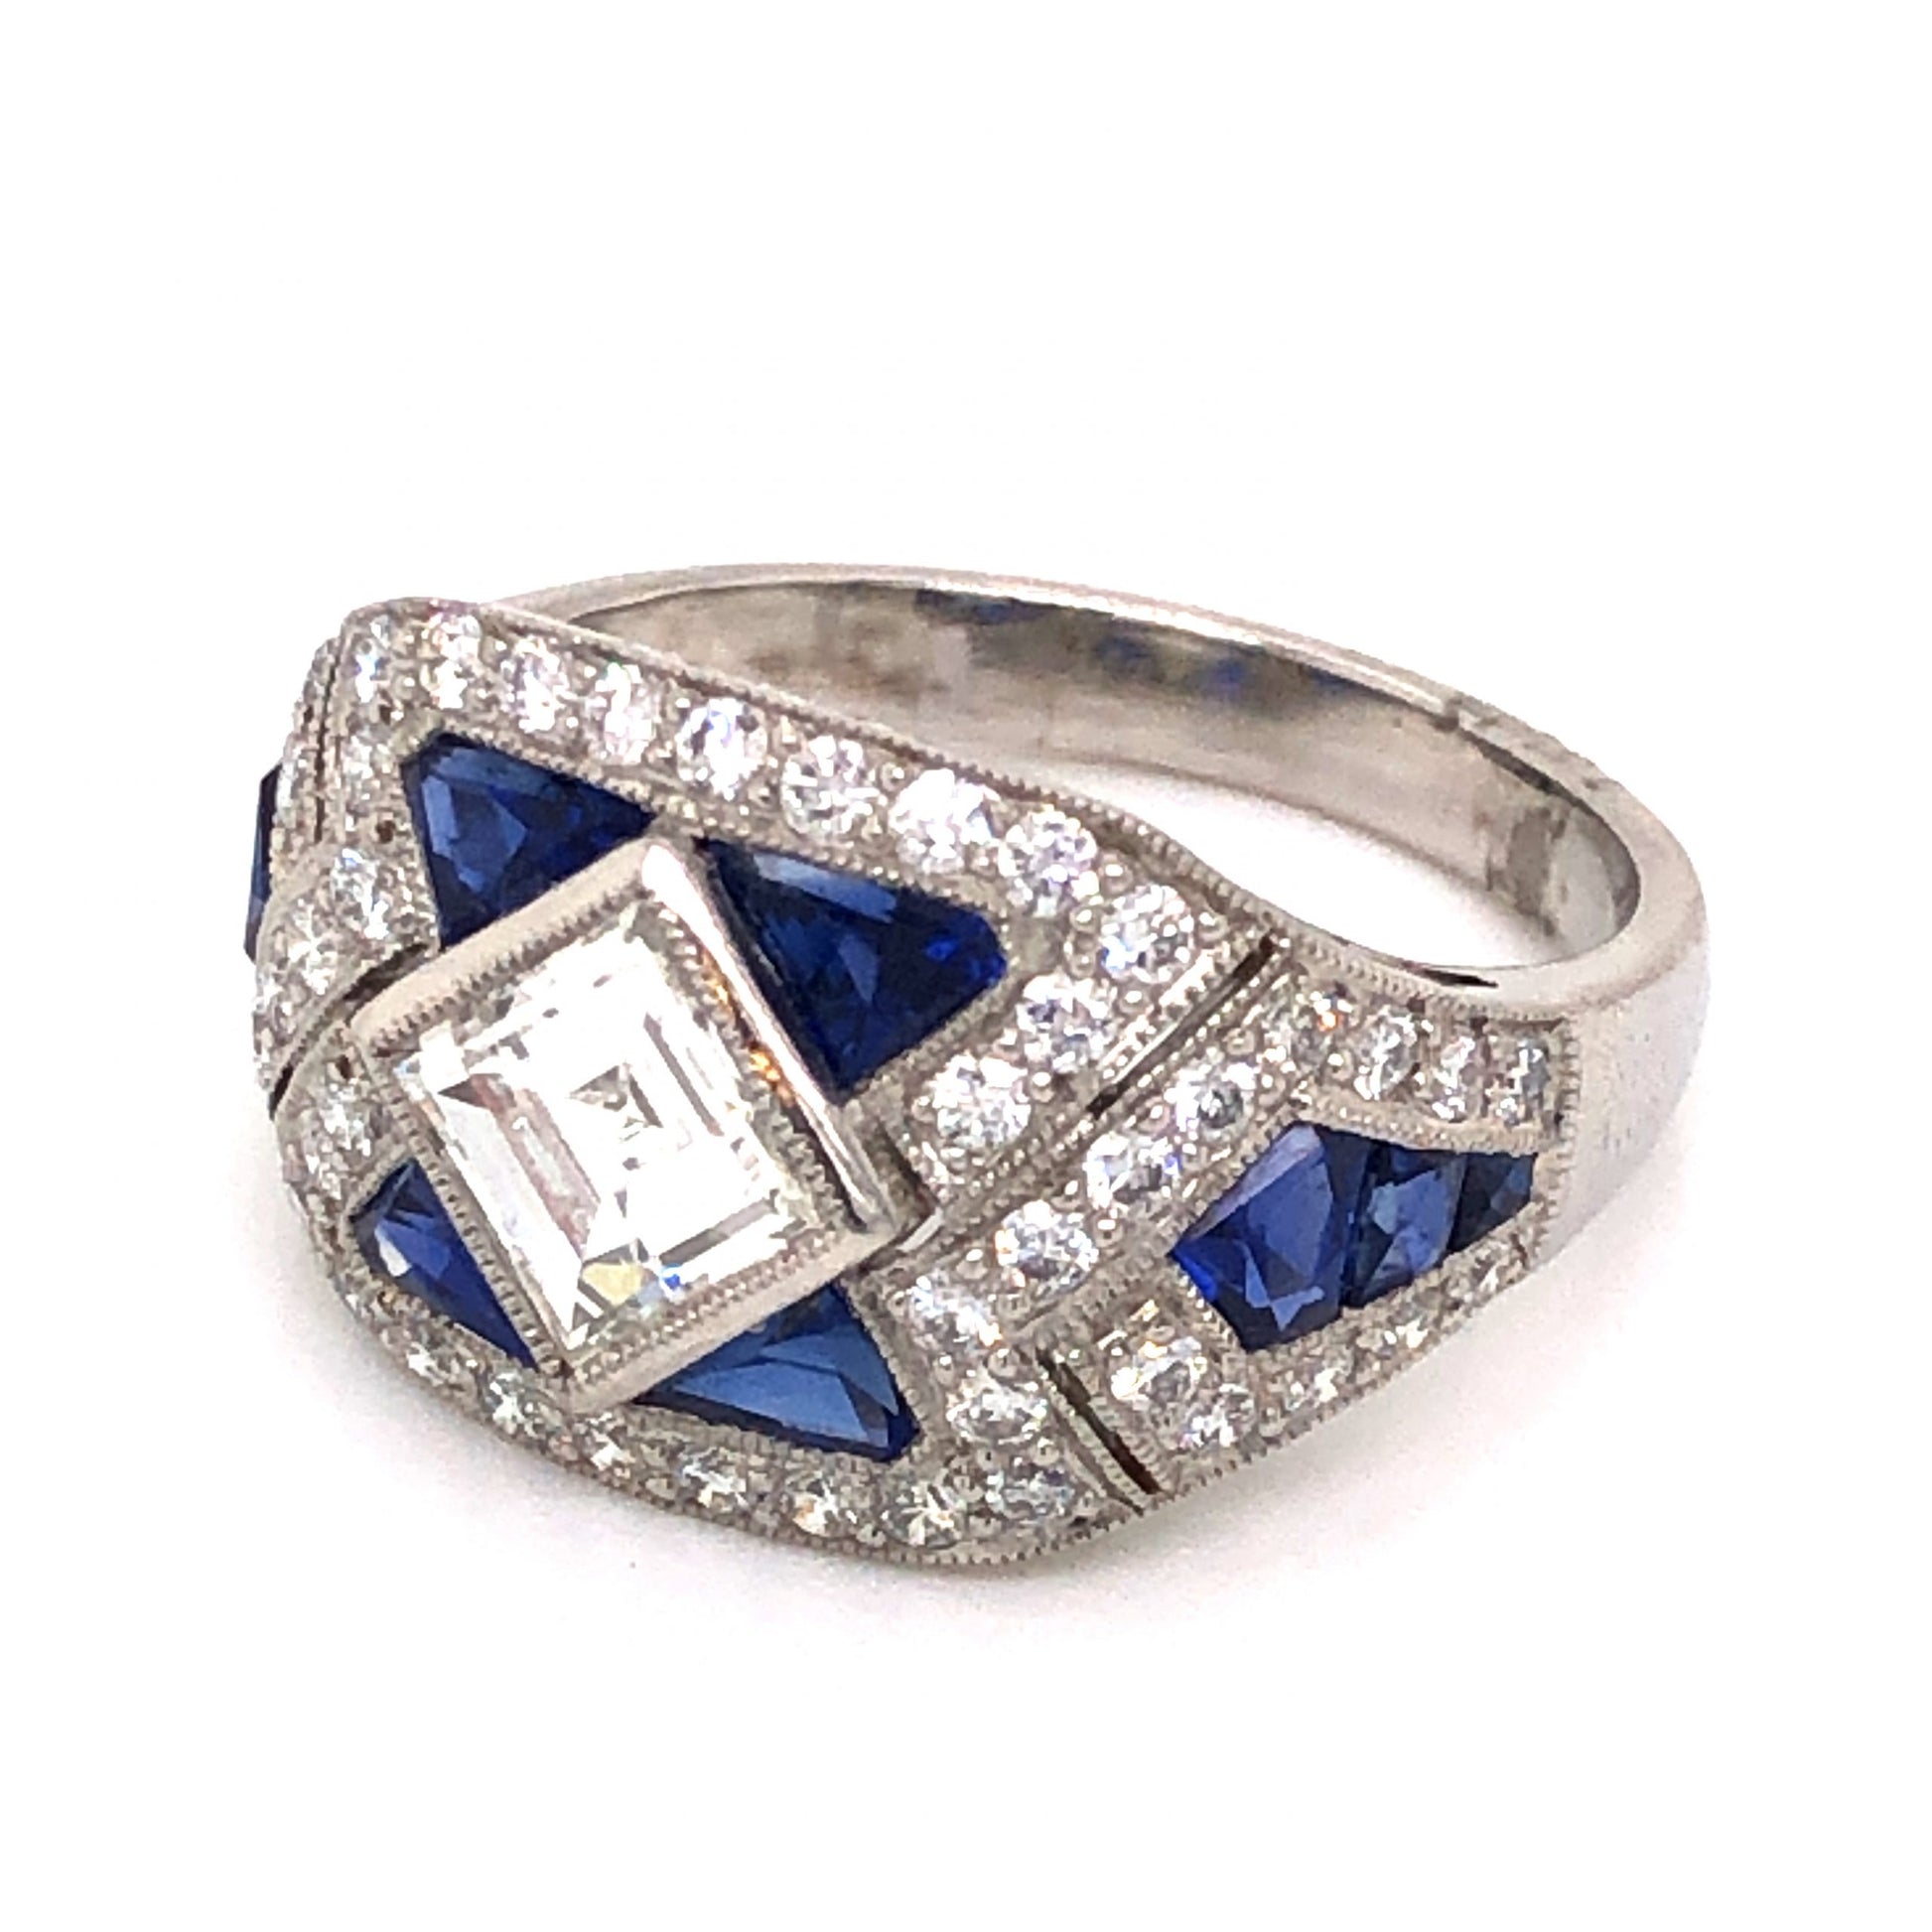 1.45 Asscher Cut Diamond & Sapphire Ring in Platinum